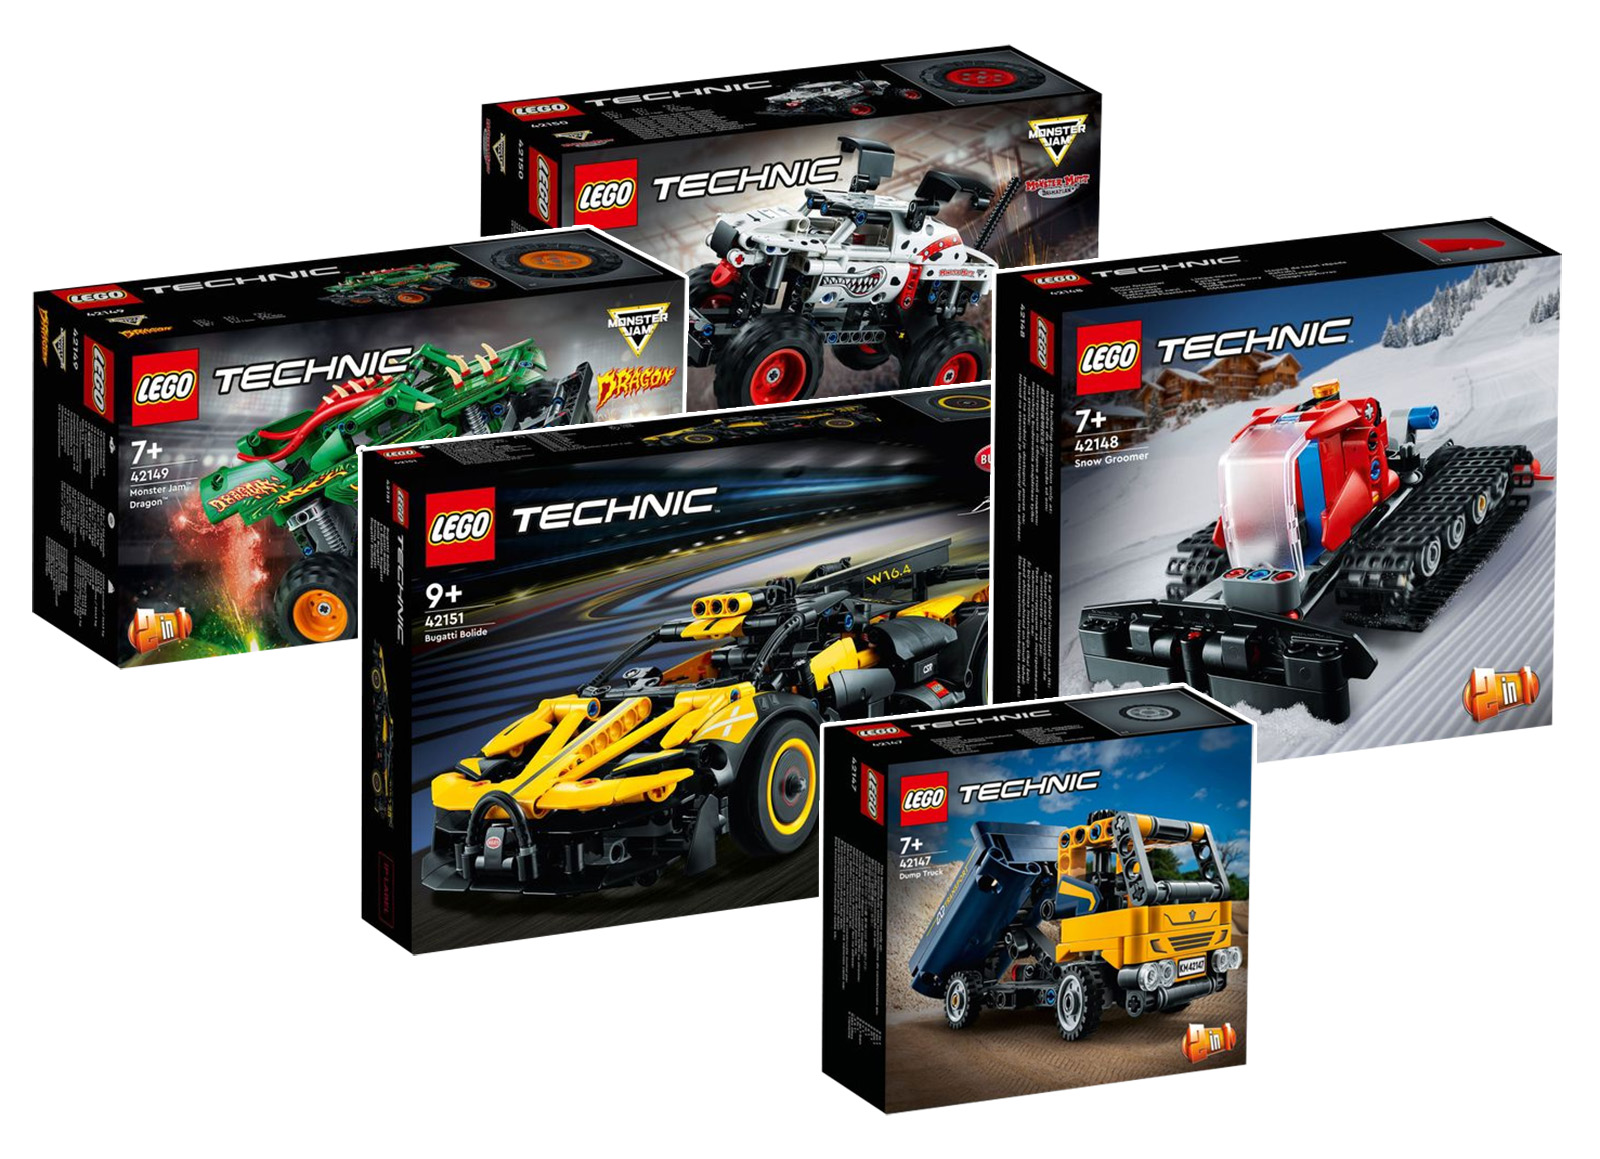 Nova LEGO Technic za prvu polovinu 1. godine: zvanični vizuali su dostupni